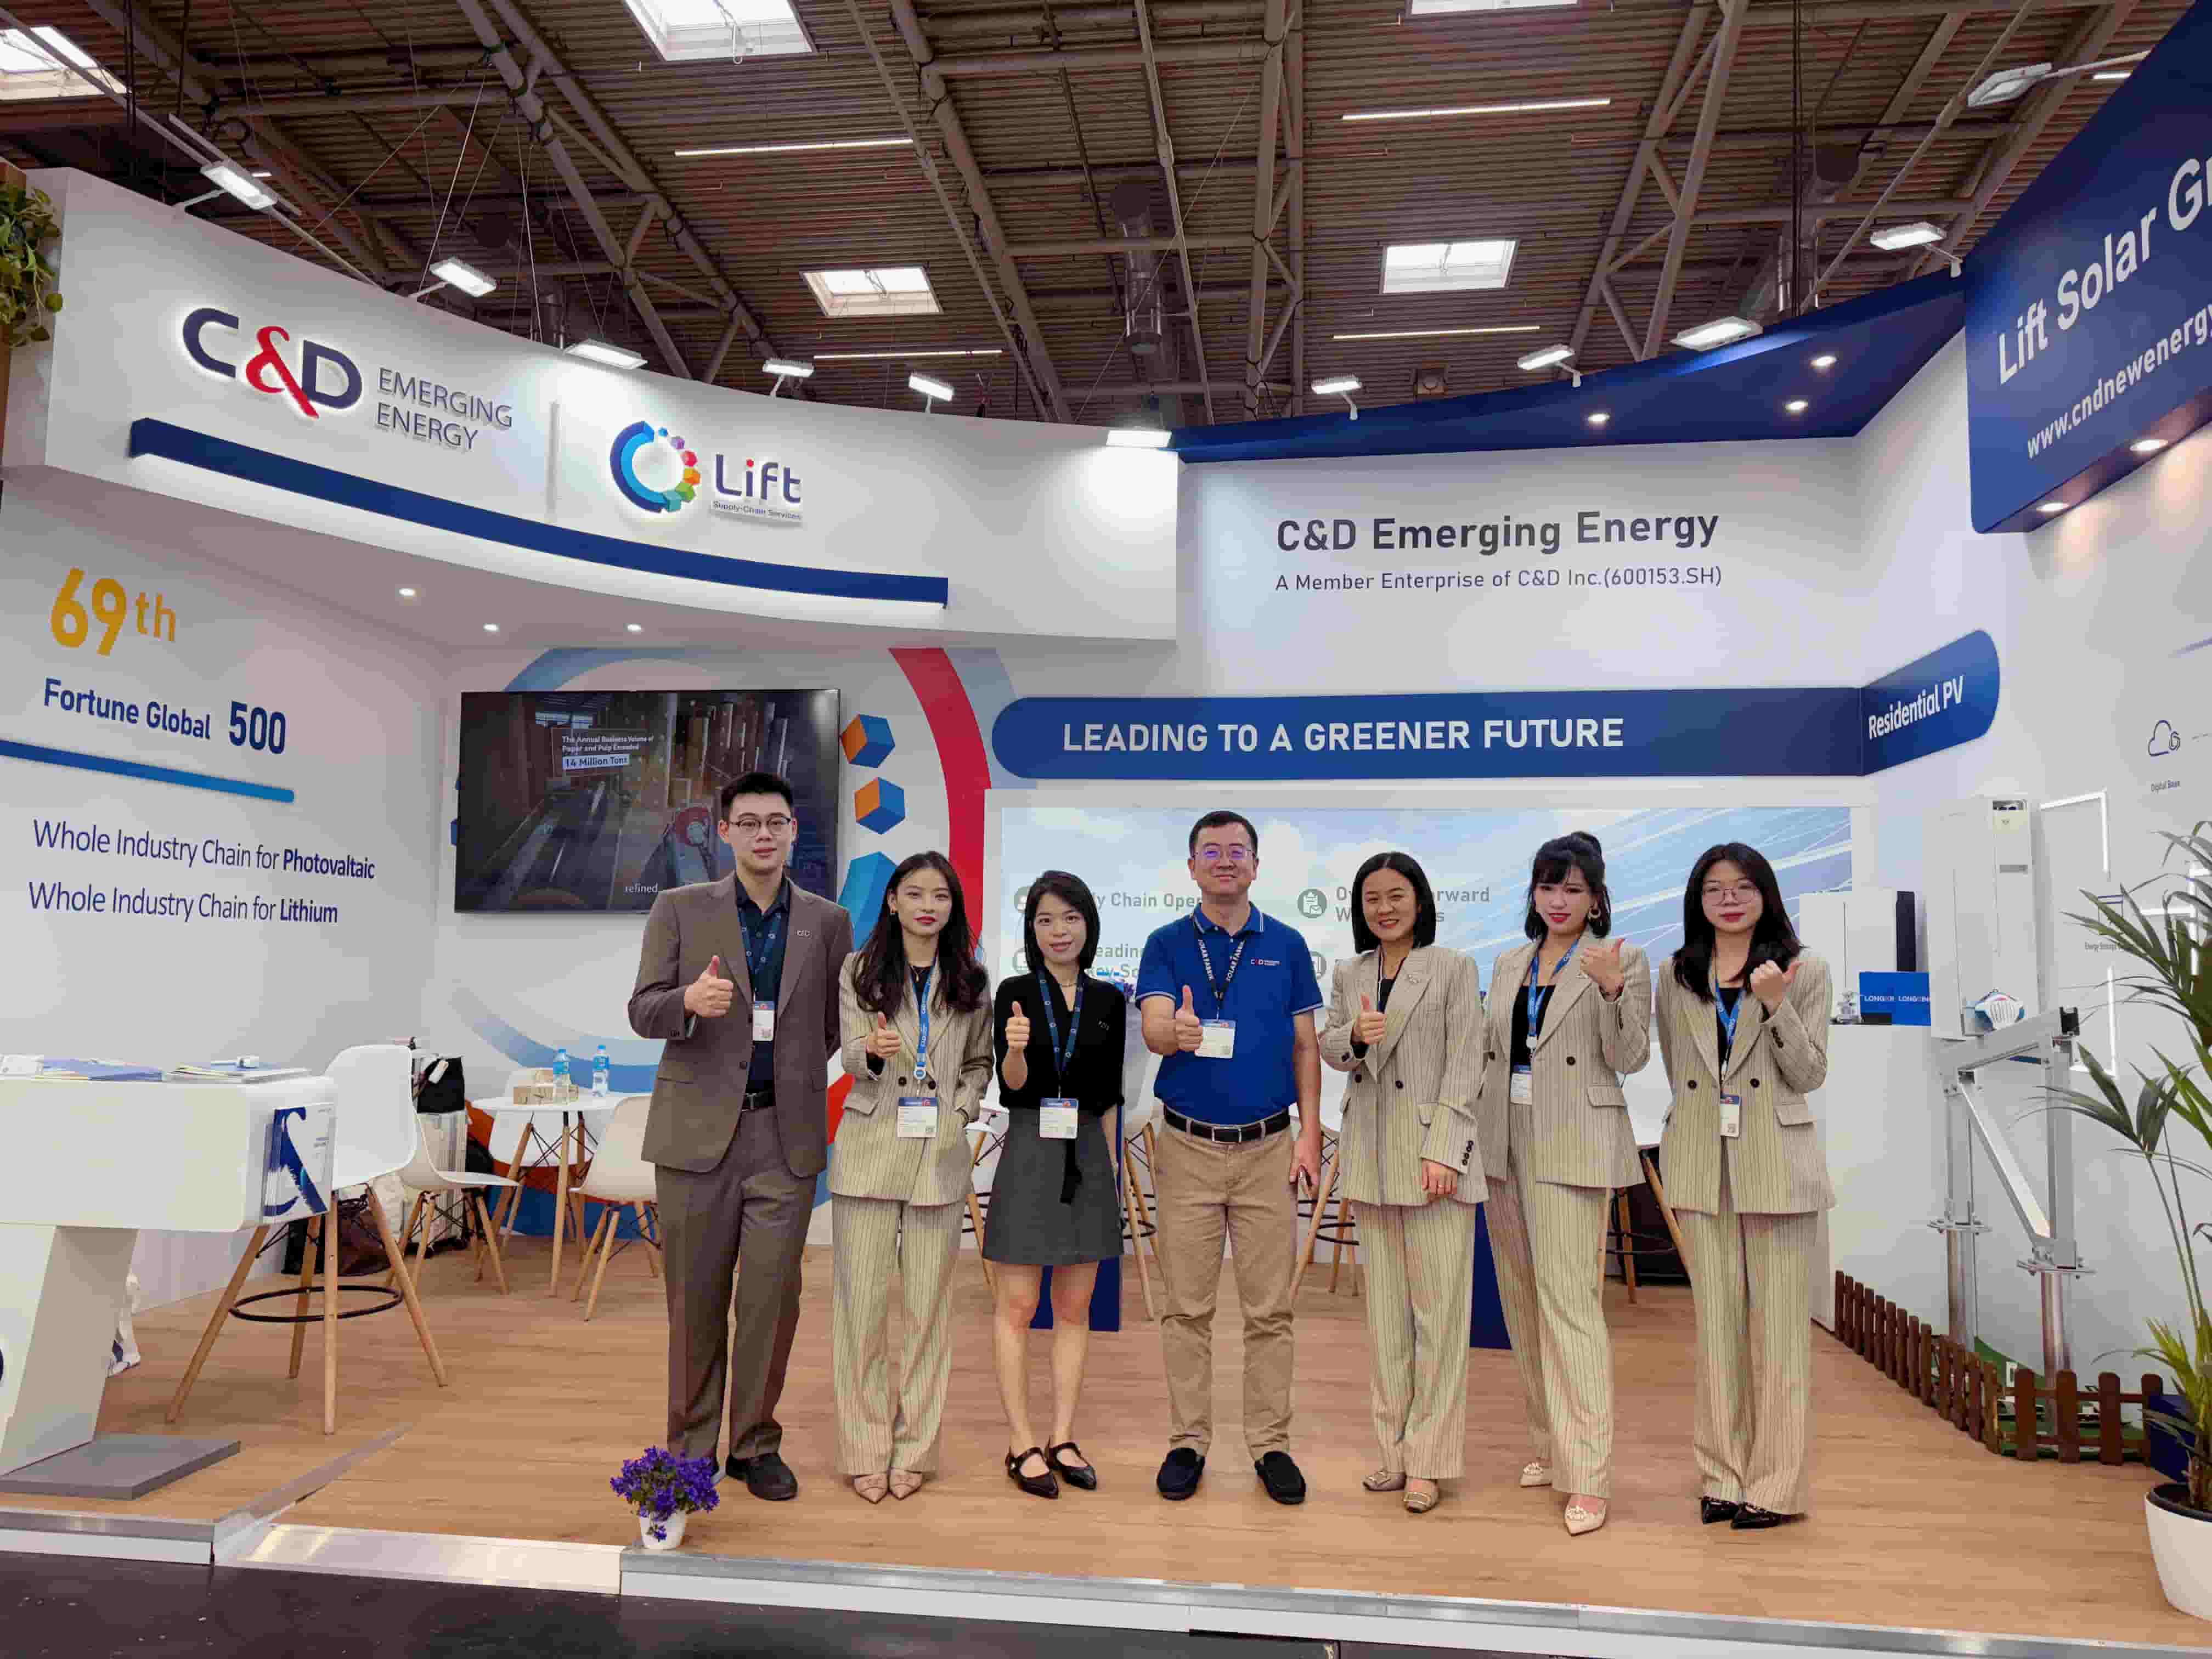 aufregende Neuigkeiten! Xiamen C&D Emerging Energy glänzt auf der Intersolar Europe und entwirft einen Entwurf für eine „kohlenstofffreie“ Zukunft